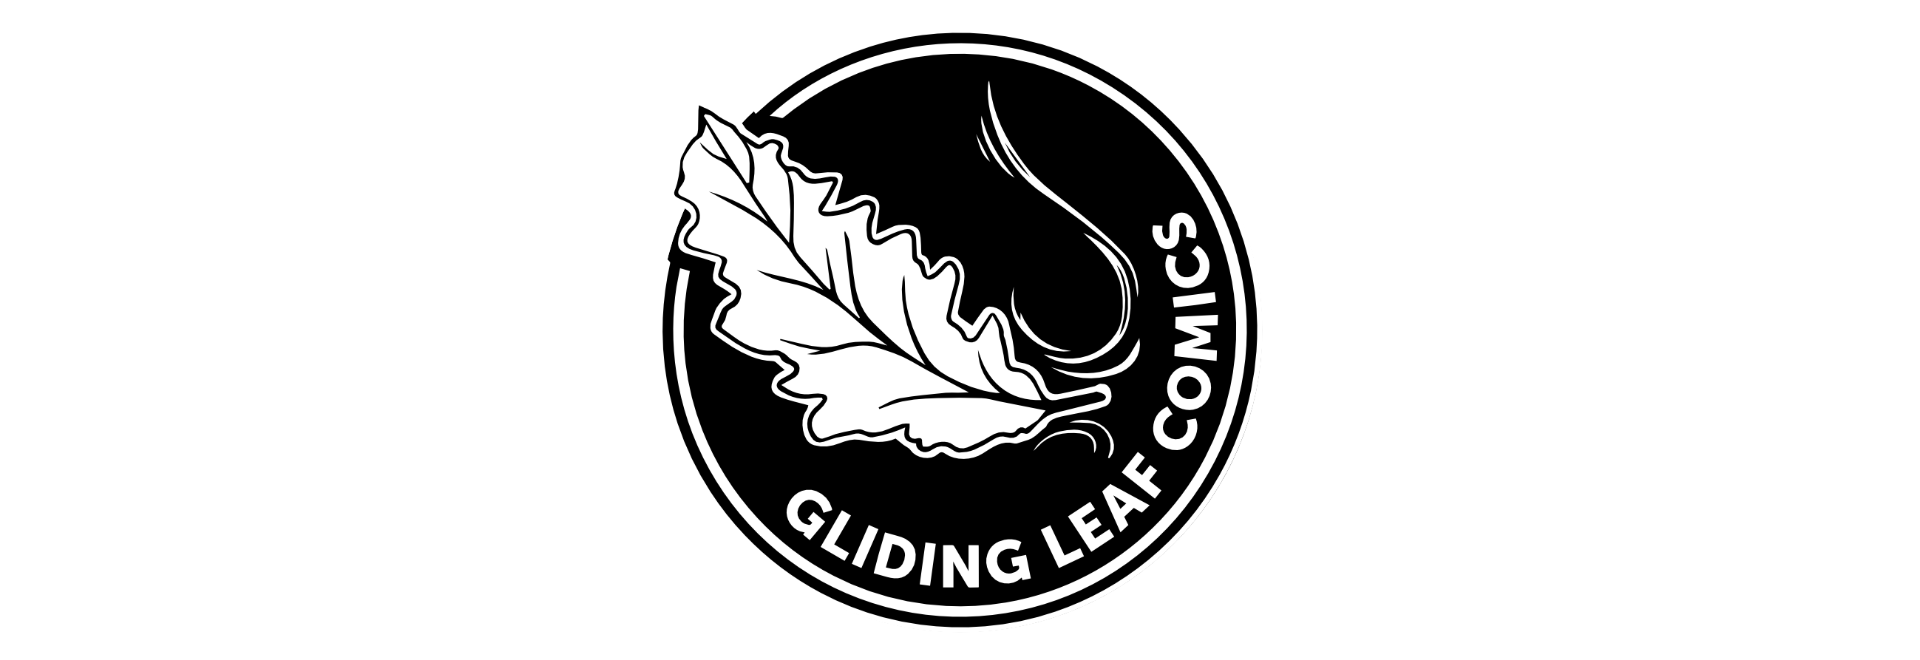 Gliding Leaf Comics